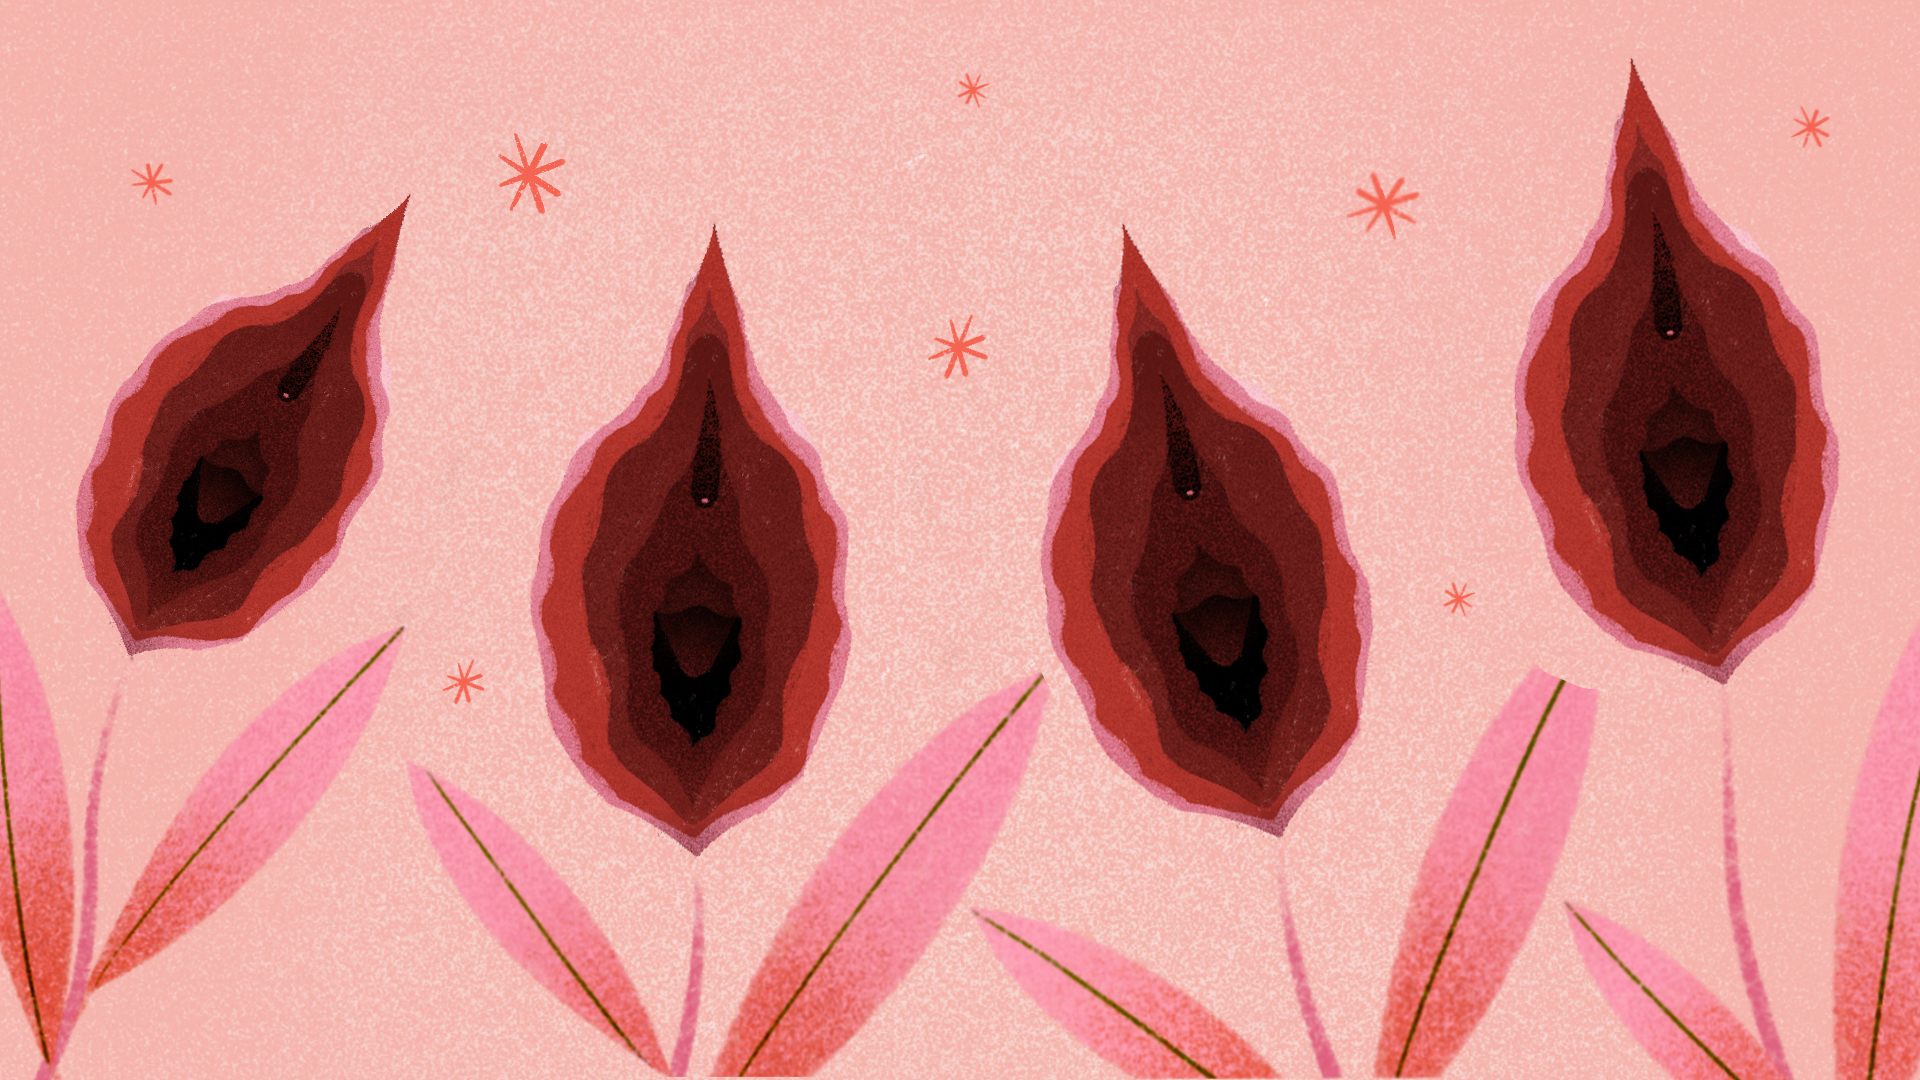 Vulva e vagina: entenda a diferença e a importância de cada parte